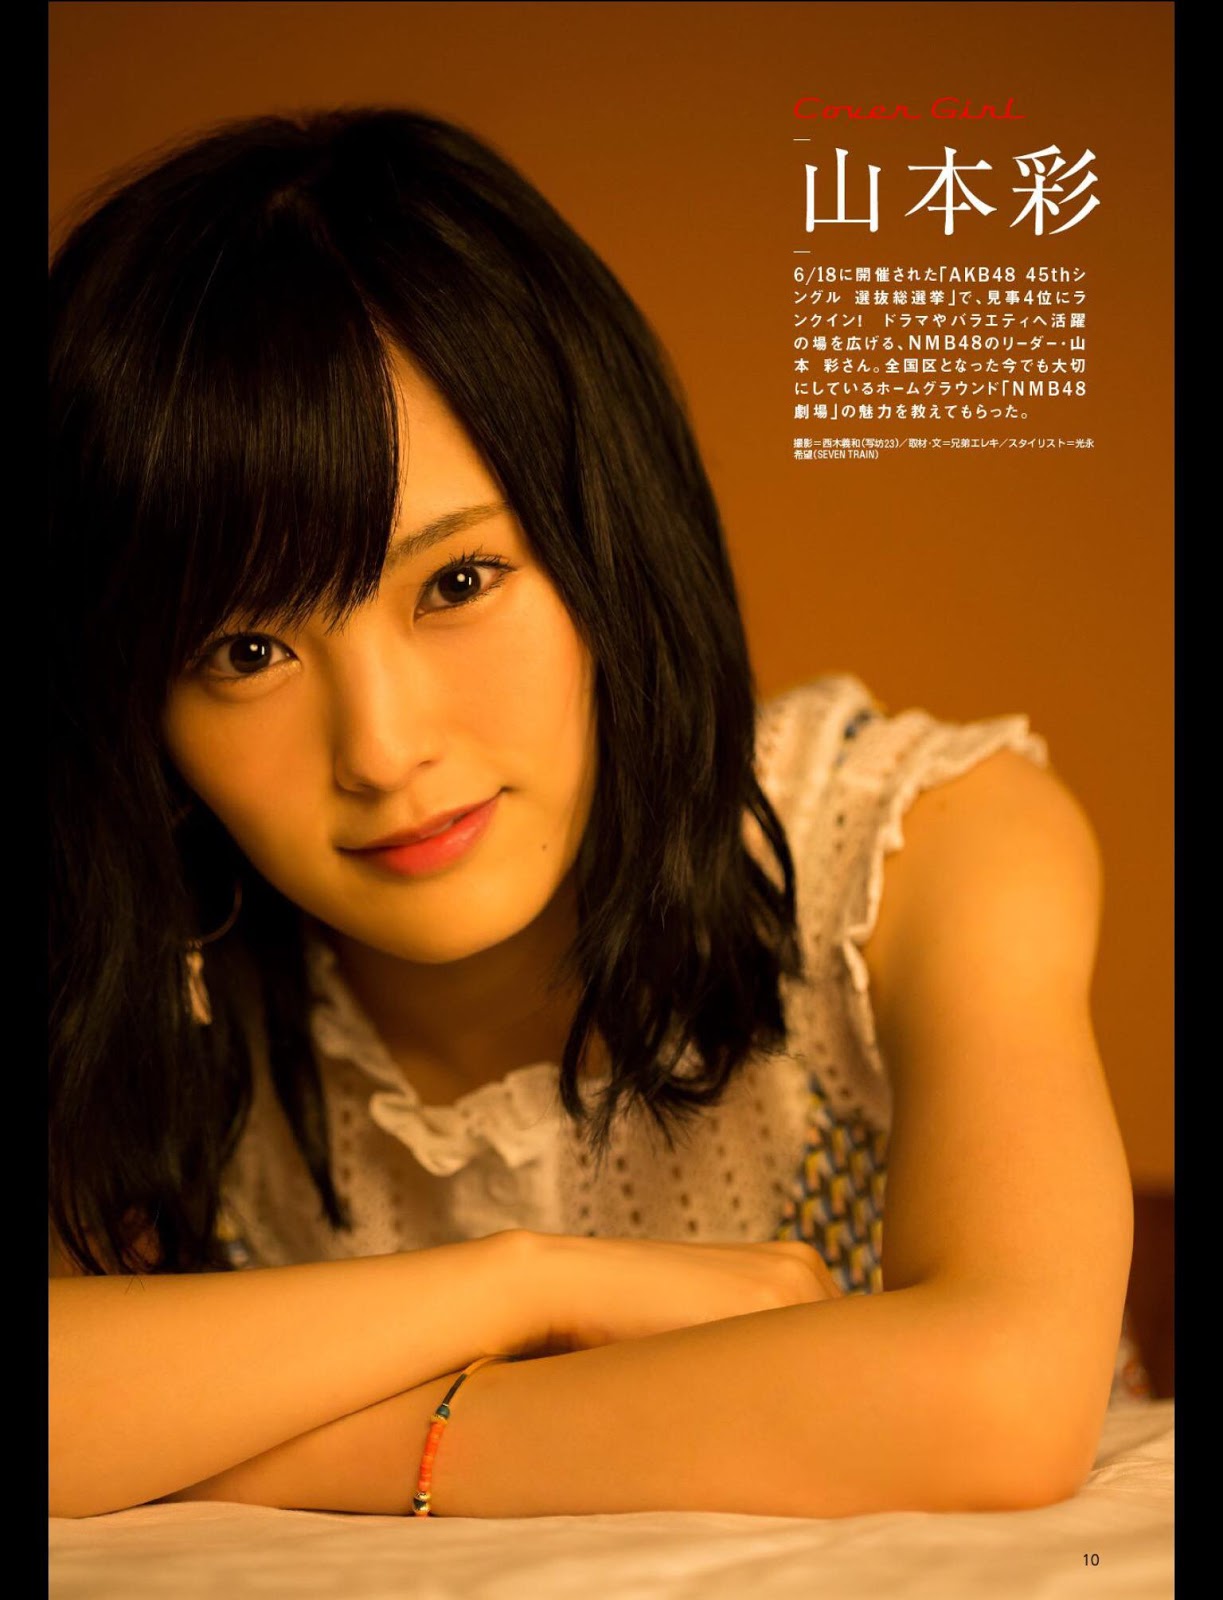 Yamamoto Sayaka 山本彩 NMB48, Tokyo Walker June 2016 Cover Gravure 